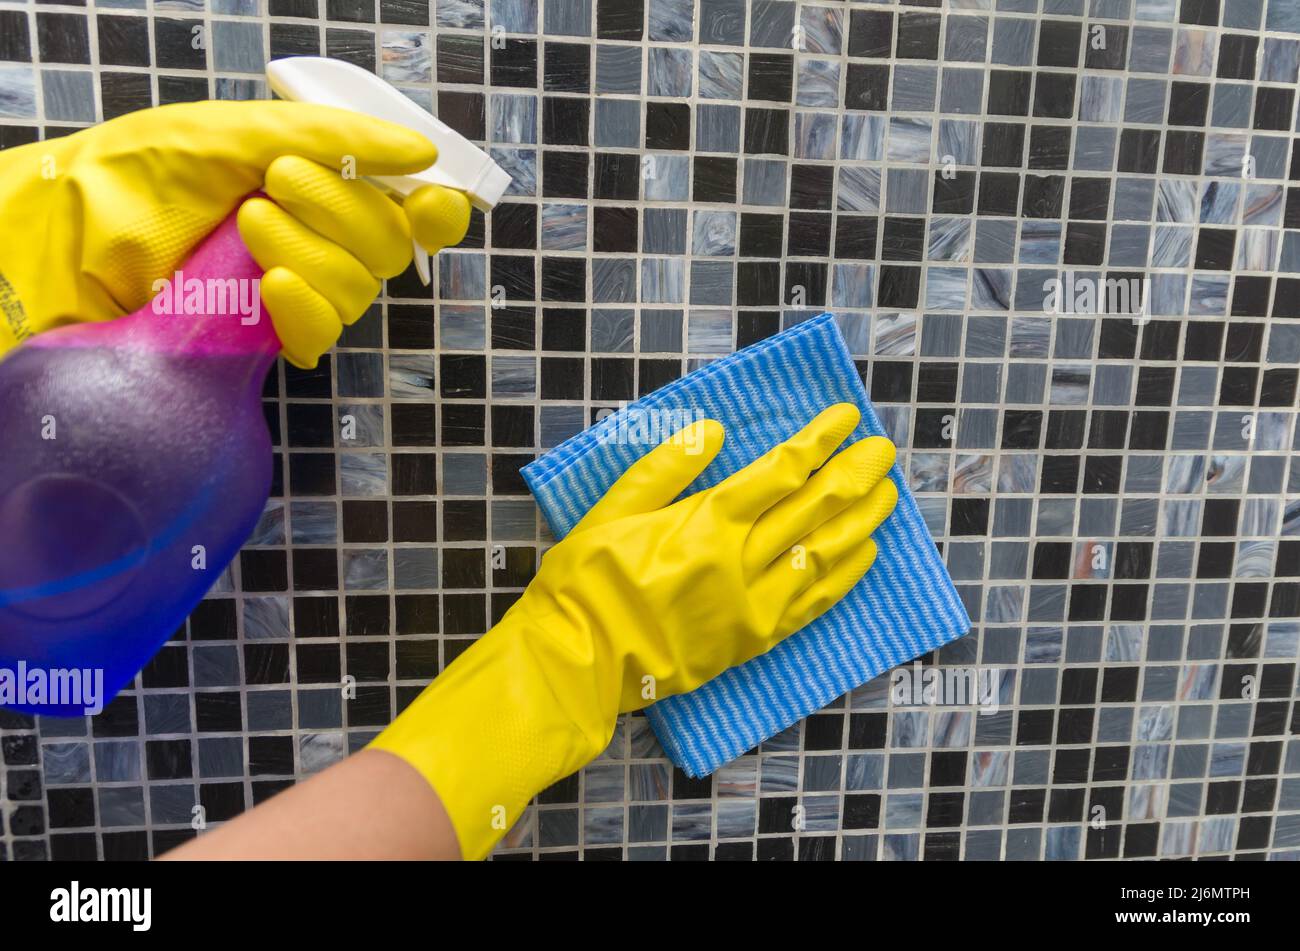 Gran concepto de limpieza doméstica, guante papel secamanos pared de mosaico. Foto de stock